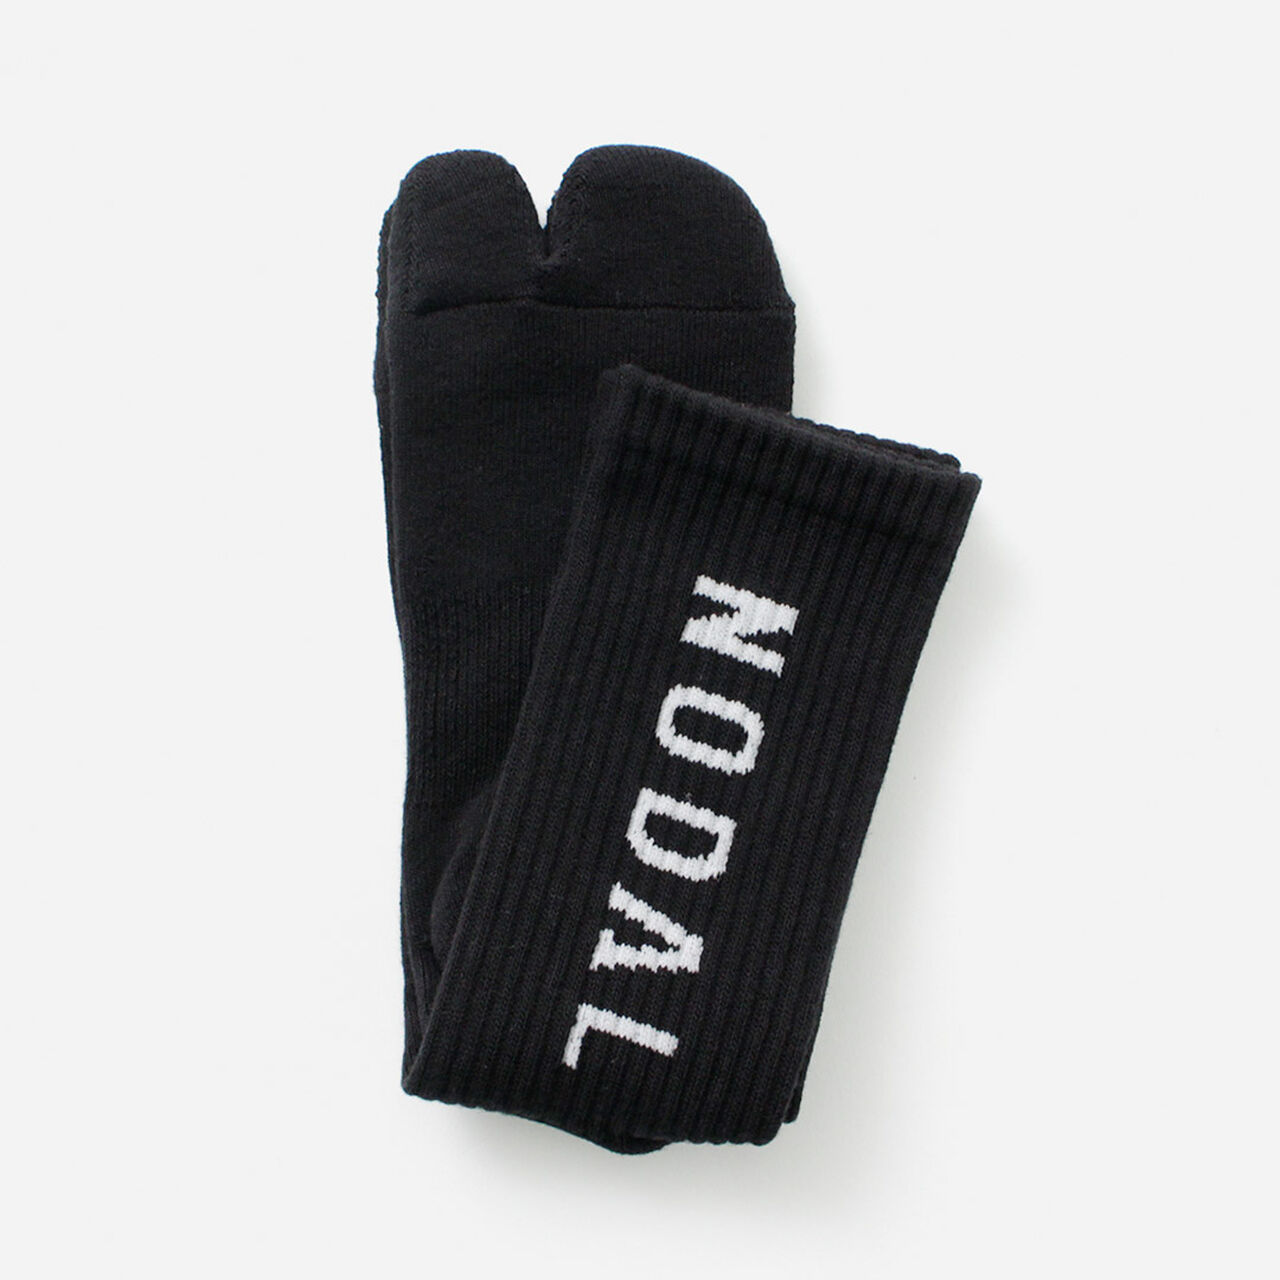 NODAL Logo Socks,Black, large image number 0